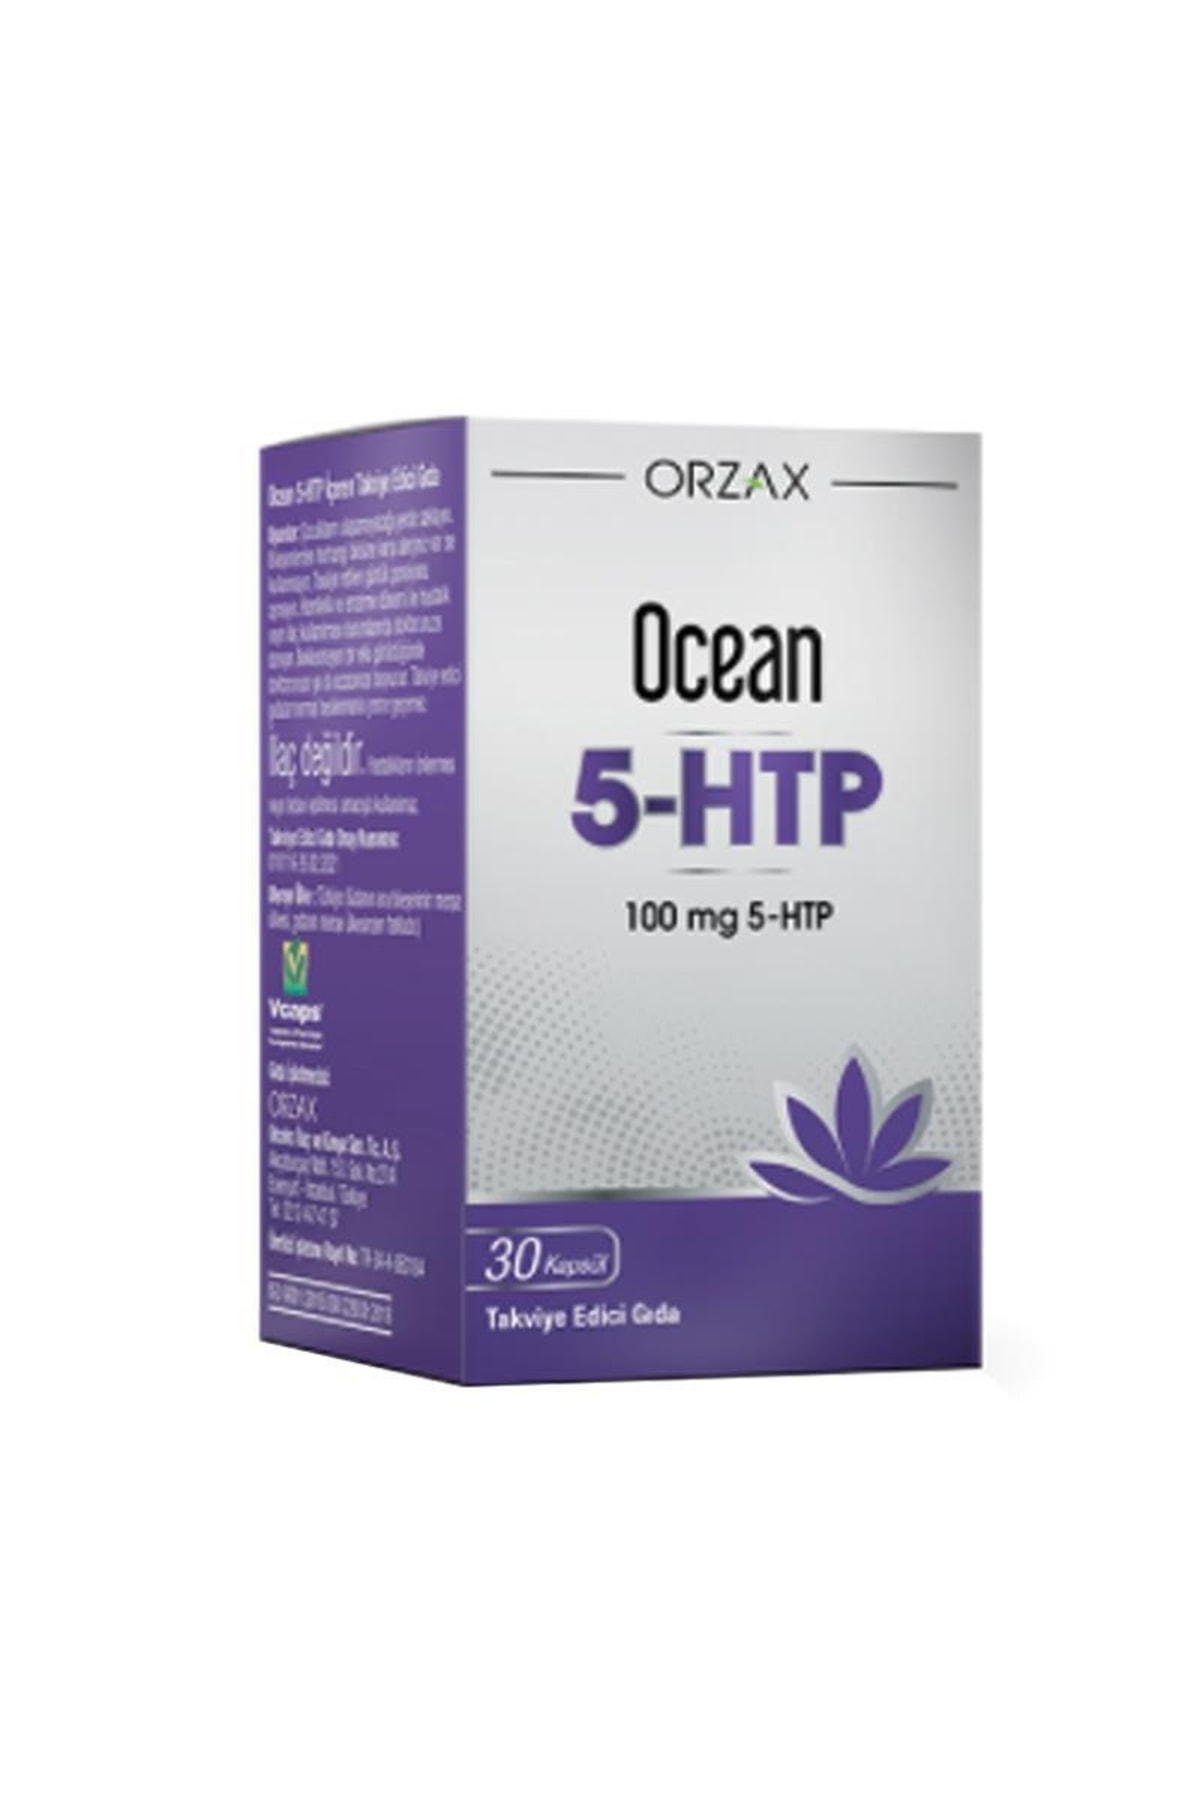 Ocean Orzax 5-htp Takviye Edici Gıda 30 Kapsül